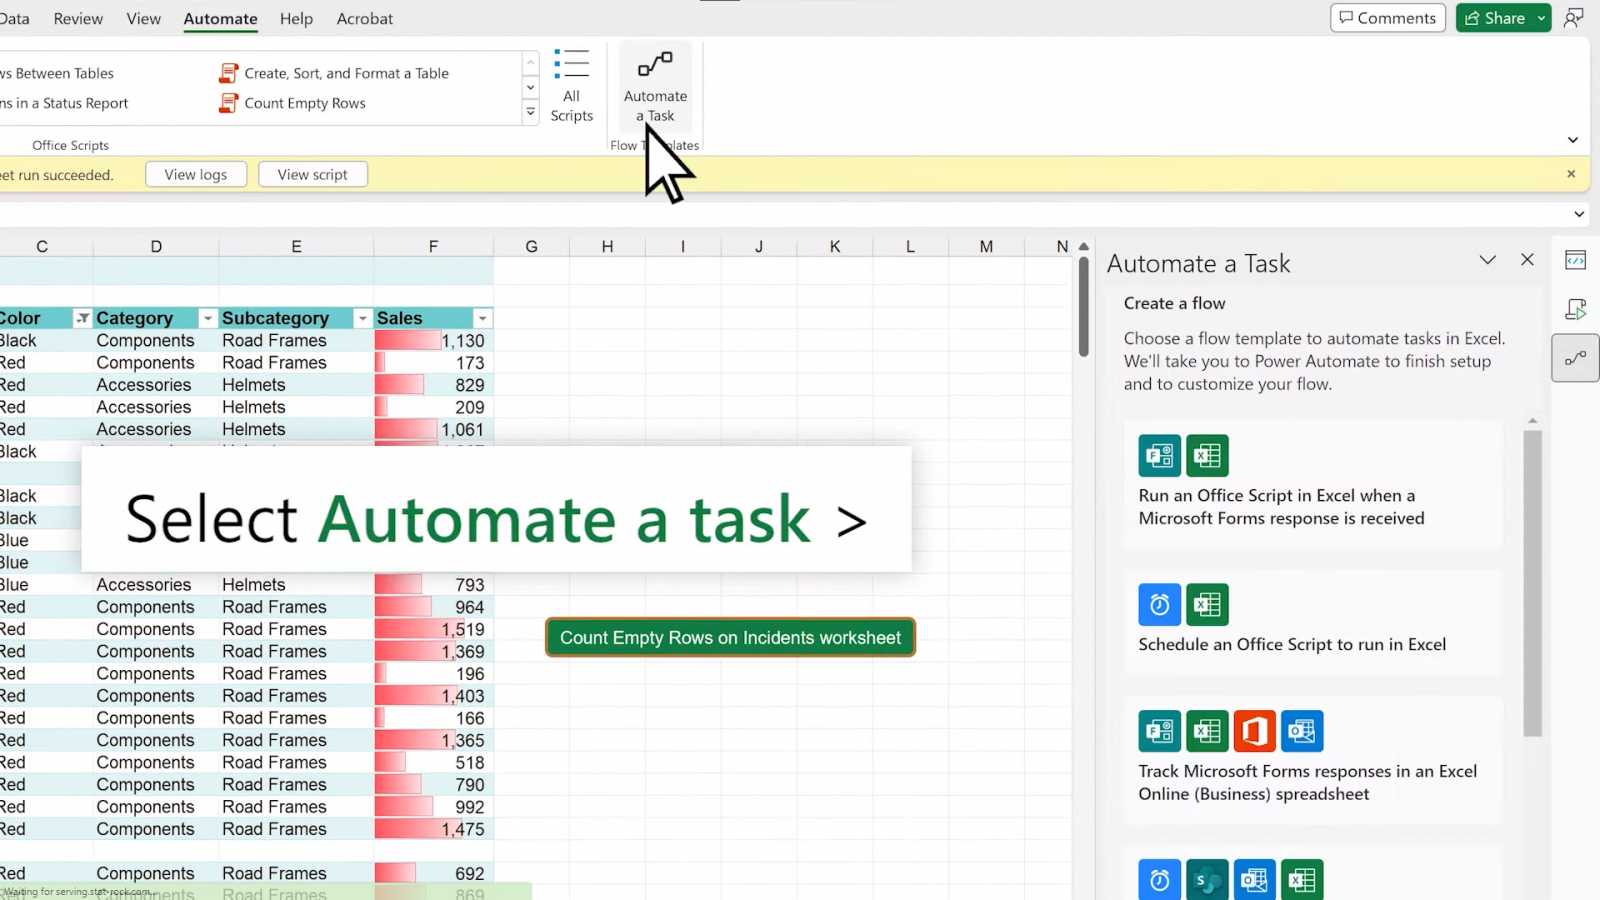 Microsoft นำแท็บอัตโนมัติมาสู่ Excel บนเดสก์ท็อป